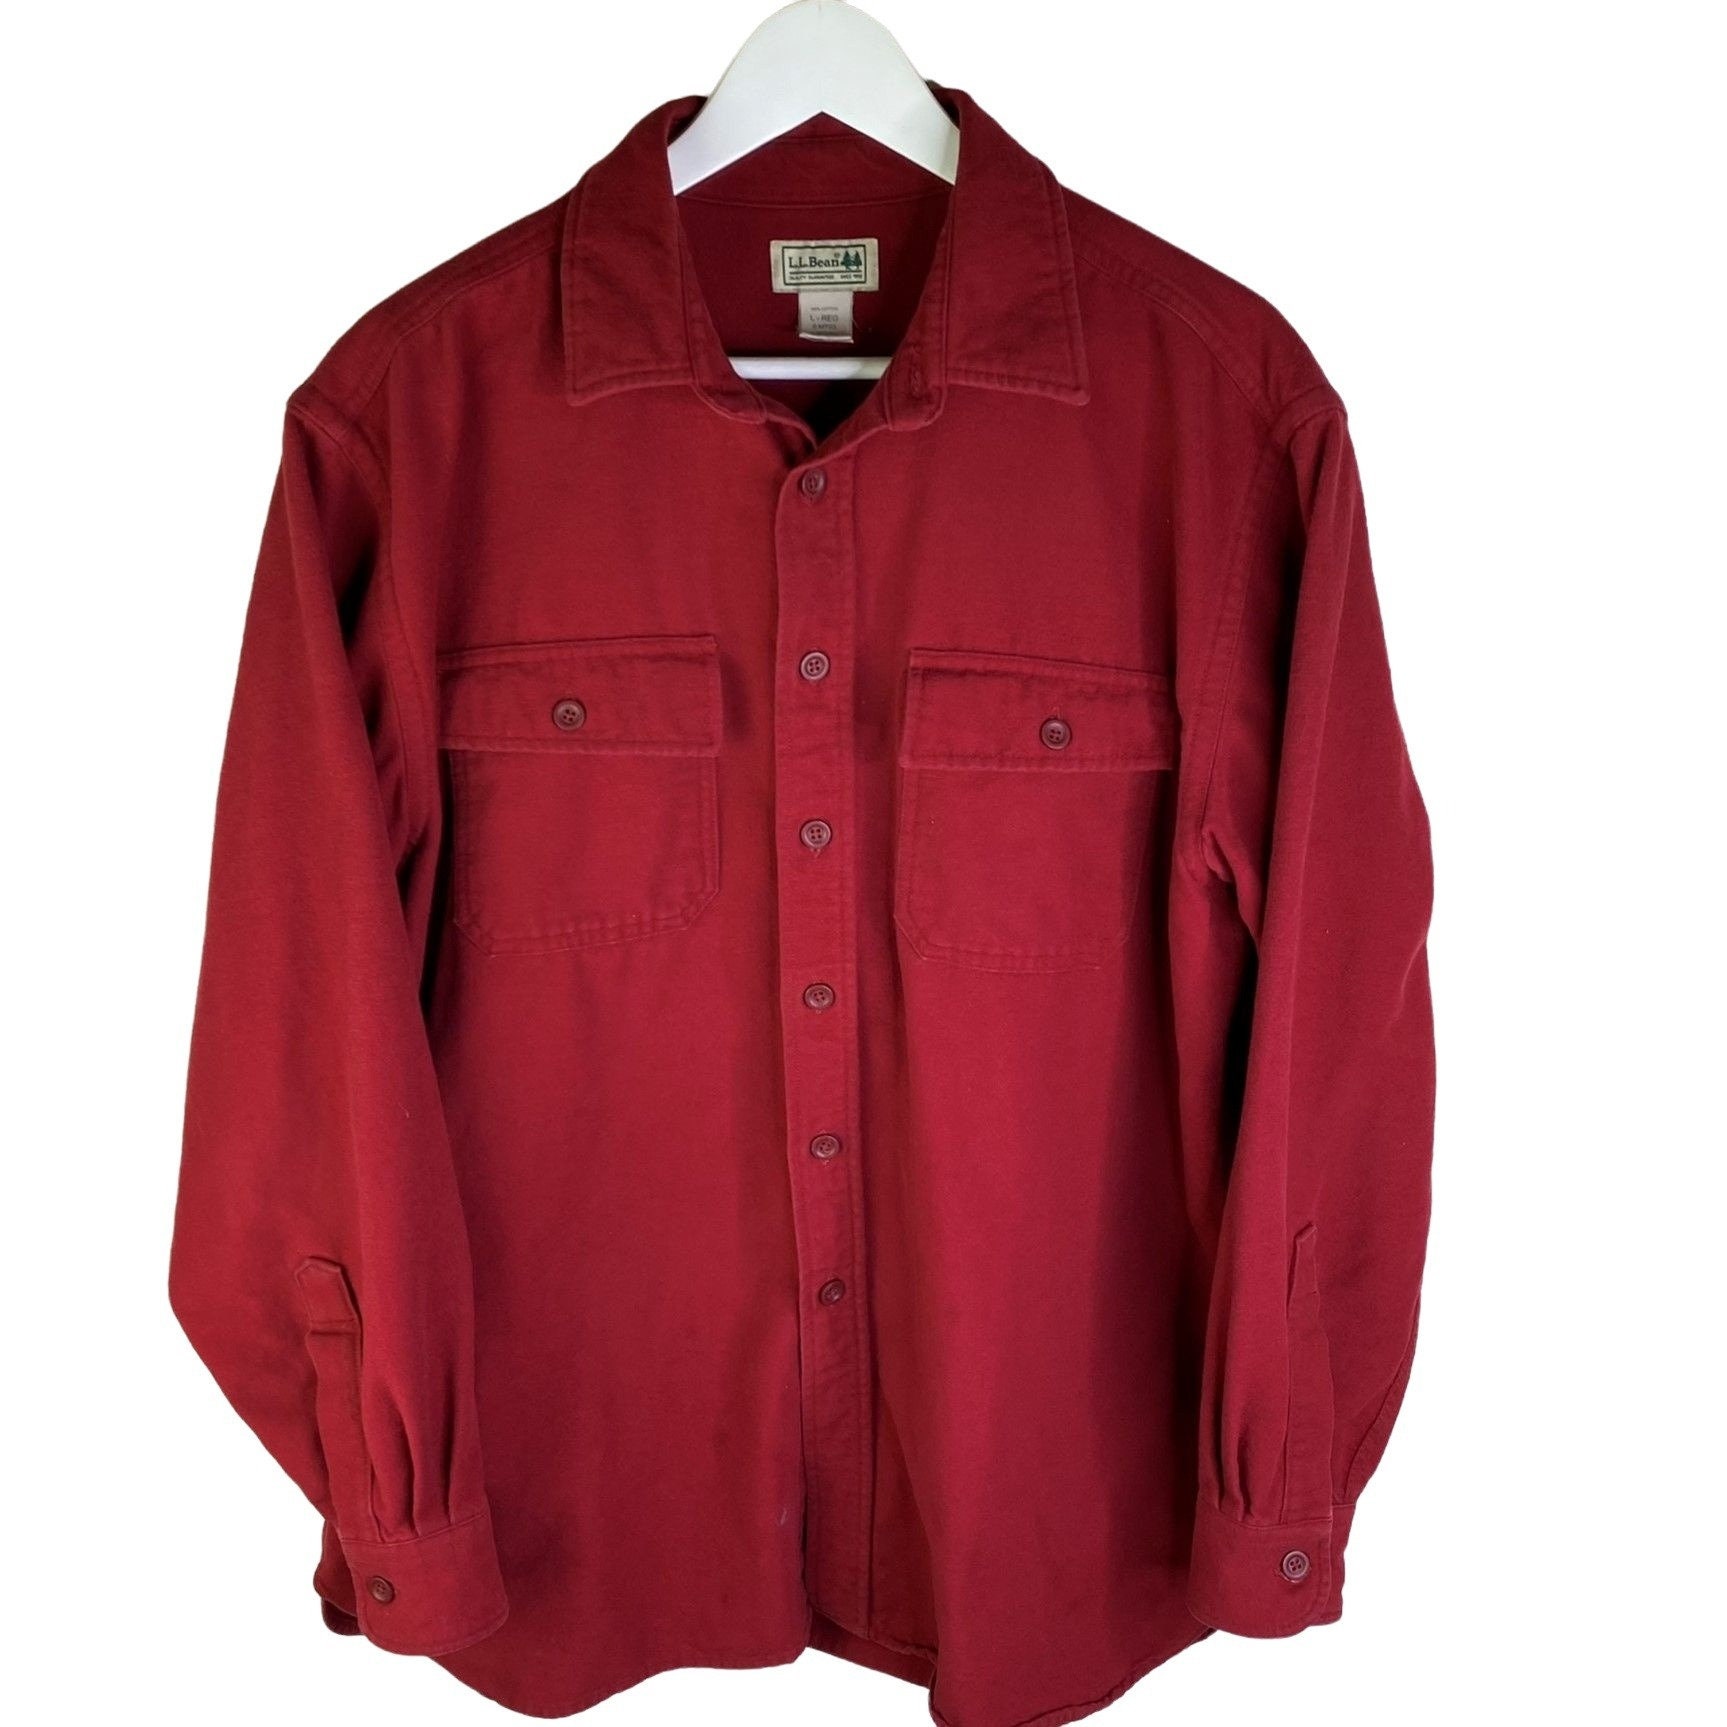 Kleding Herenkleding Overhemden & T-shirts Overhemden Vintage LL Bean Flanel Stijl Workers Shirt Button Up Shirt Maat XL 